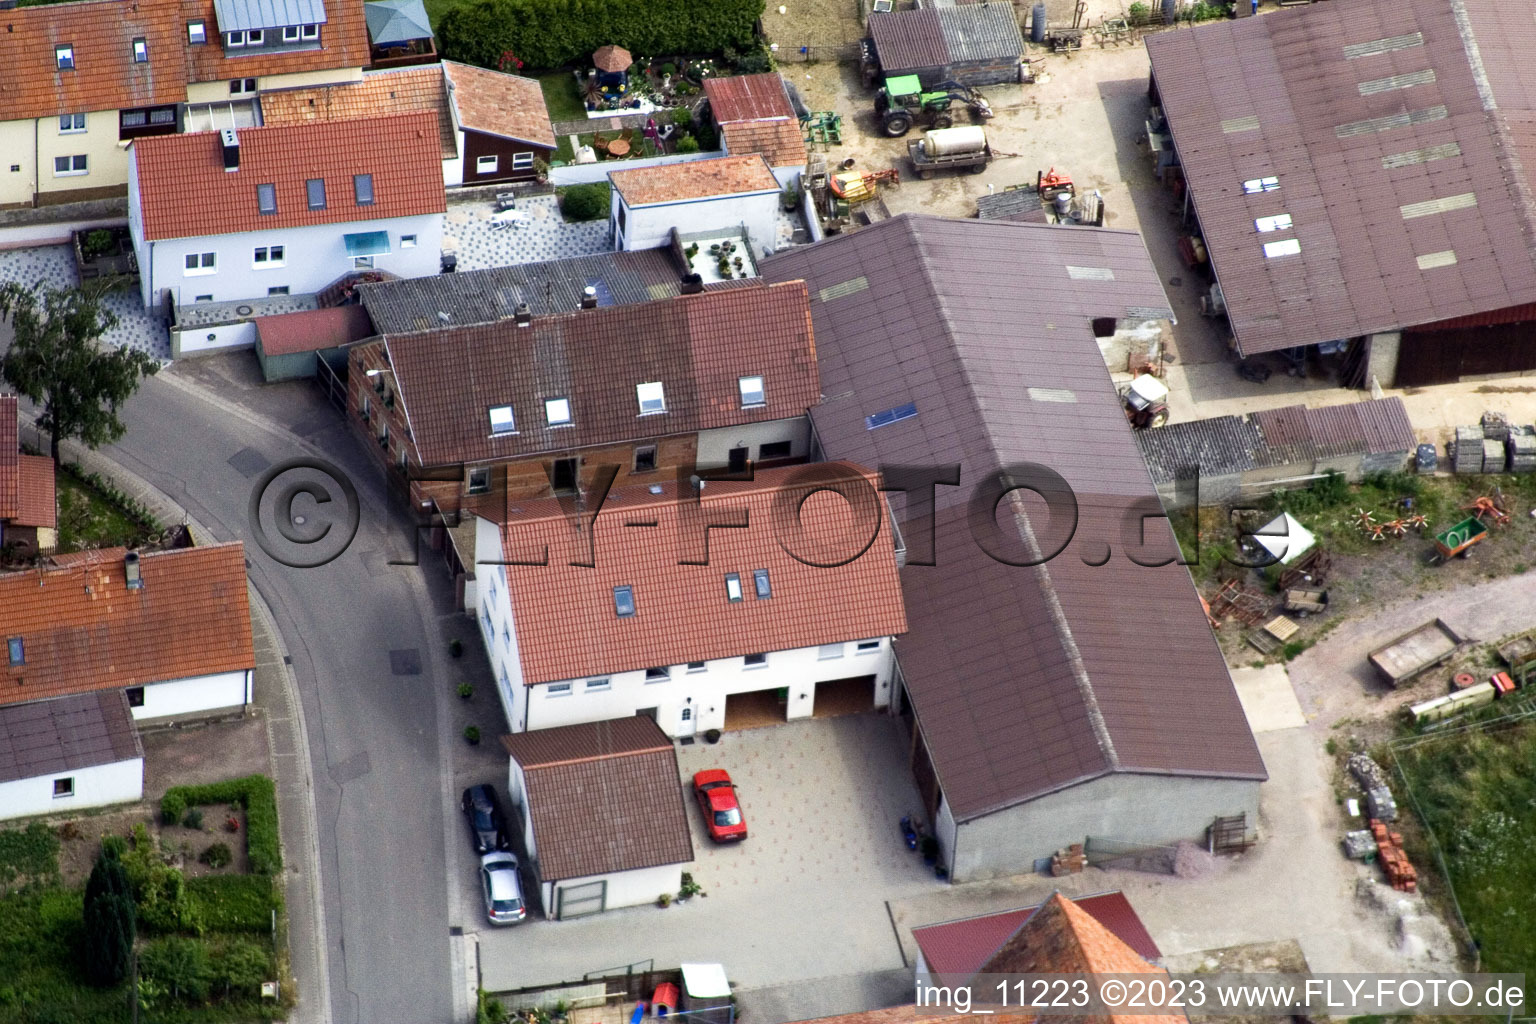 Ortsteil Mühlhofen in Billigheim-Ingenheim im Bundesland Rheinland-Pfalz, Deutschland aus der Drohnenperspektive